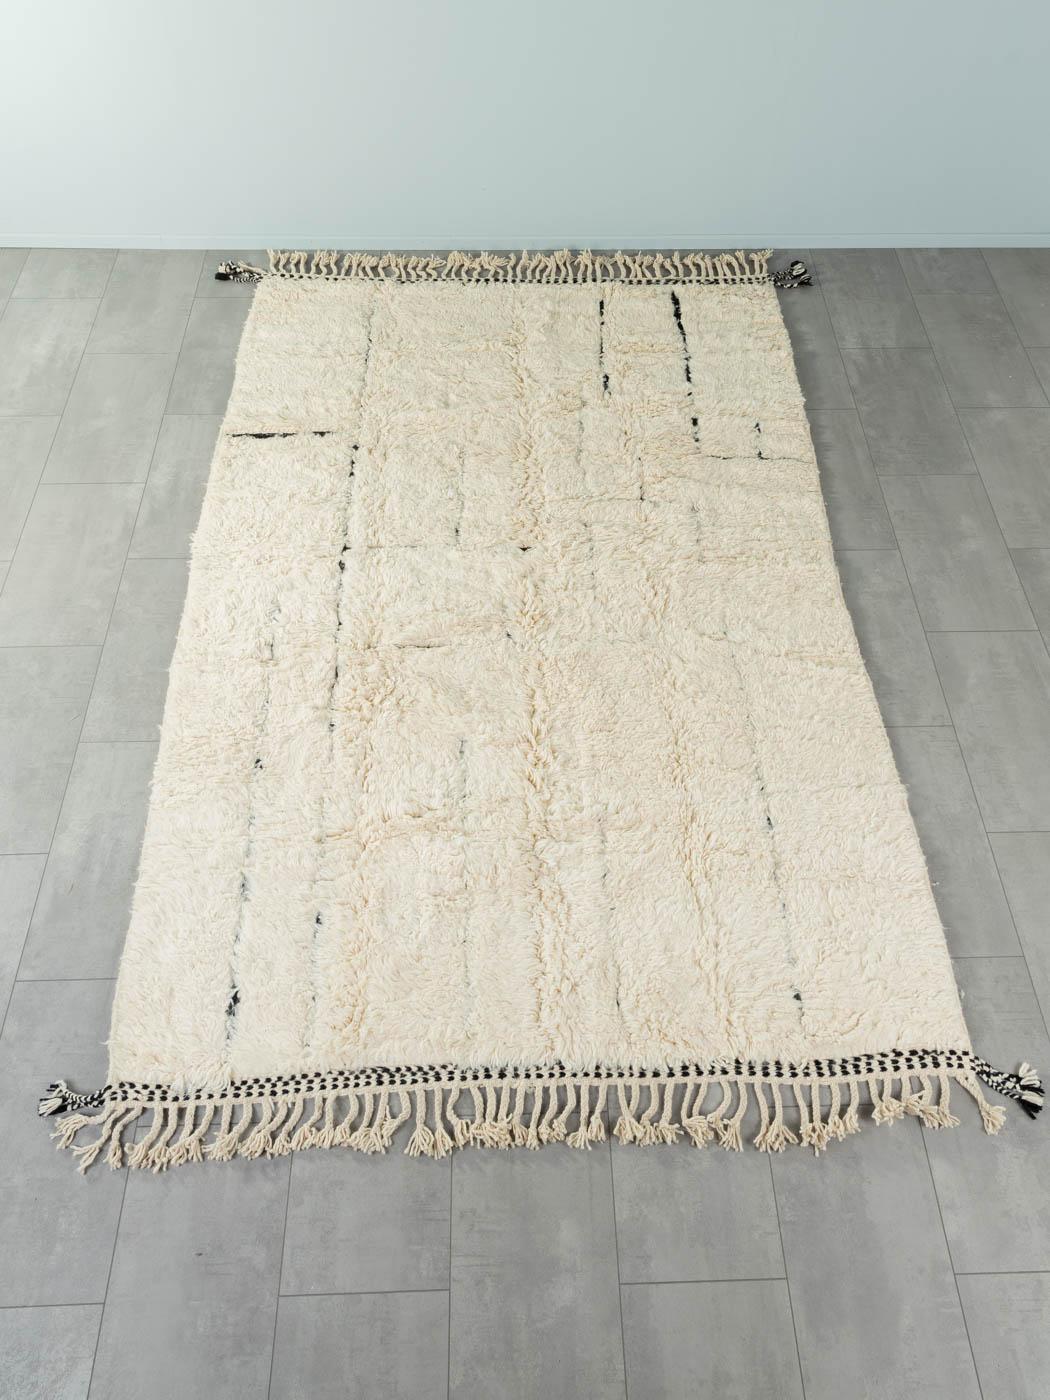 Daydream ist ein moderner Teppich aus 100 % Wolle - dick und weich, angenehm unter den Füßen. Unsere Berberteppiche werden von Amazigh-Frauen im Atlasgebirge handgewebt und handgeknüpft. Diese Gemeinschaften stellen schon seit Tausenden von Jahren